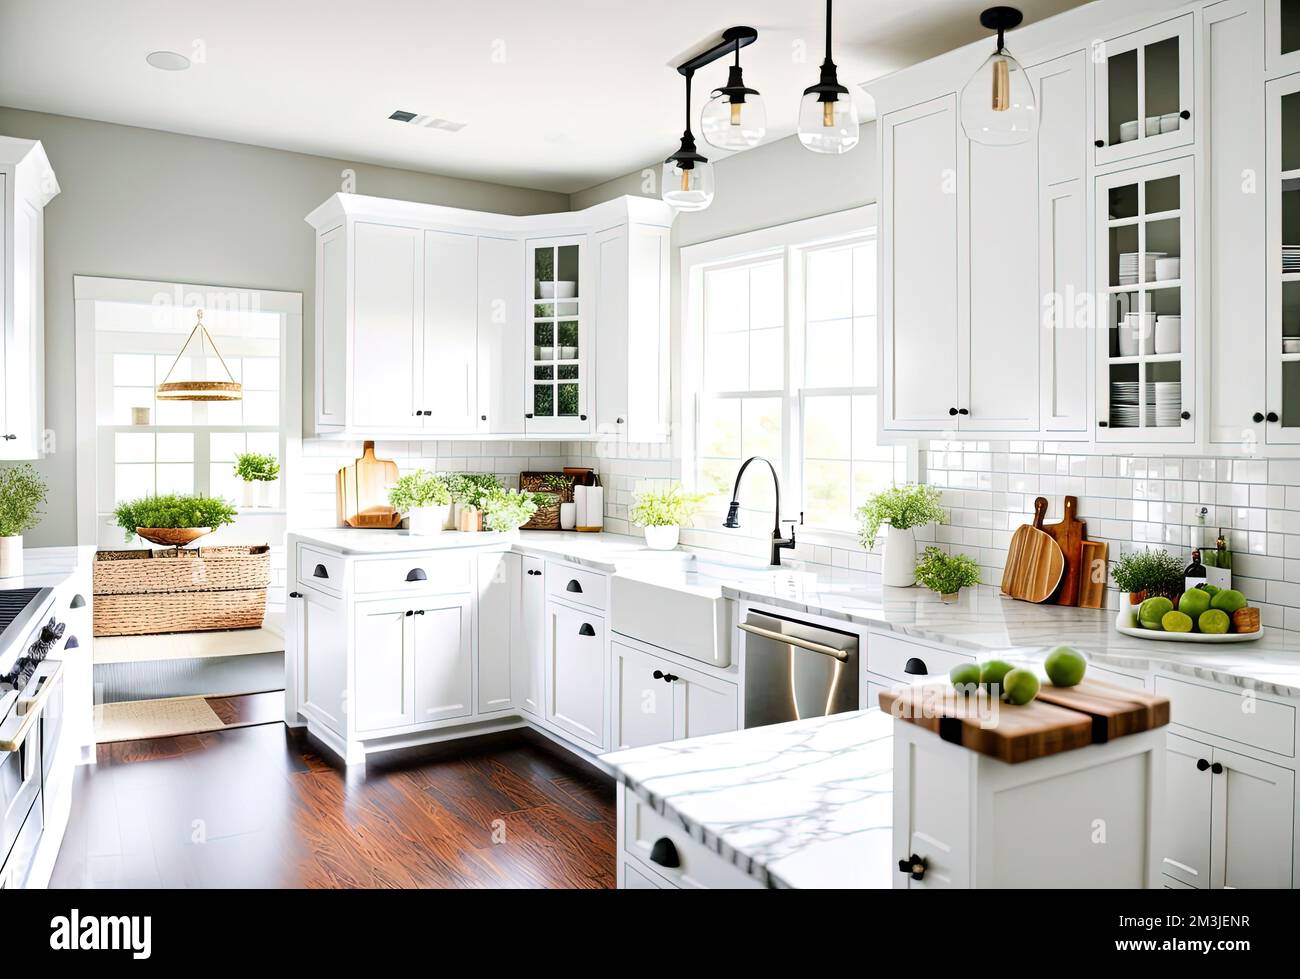 Modern kitchen interior design in a luxury house Stock Photo